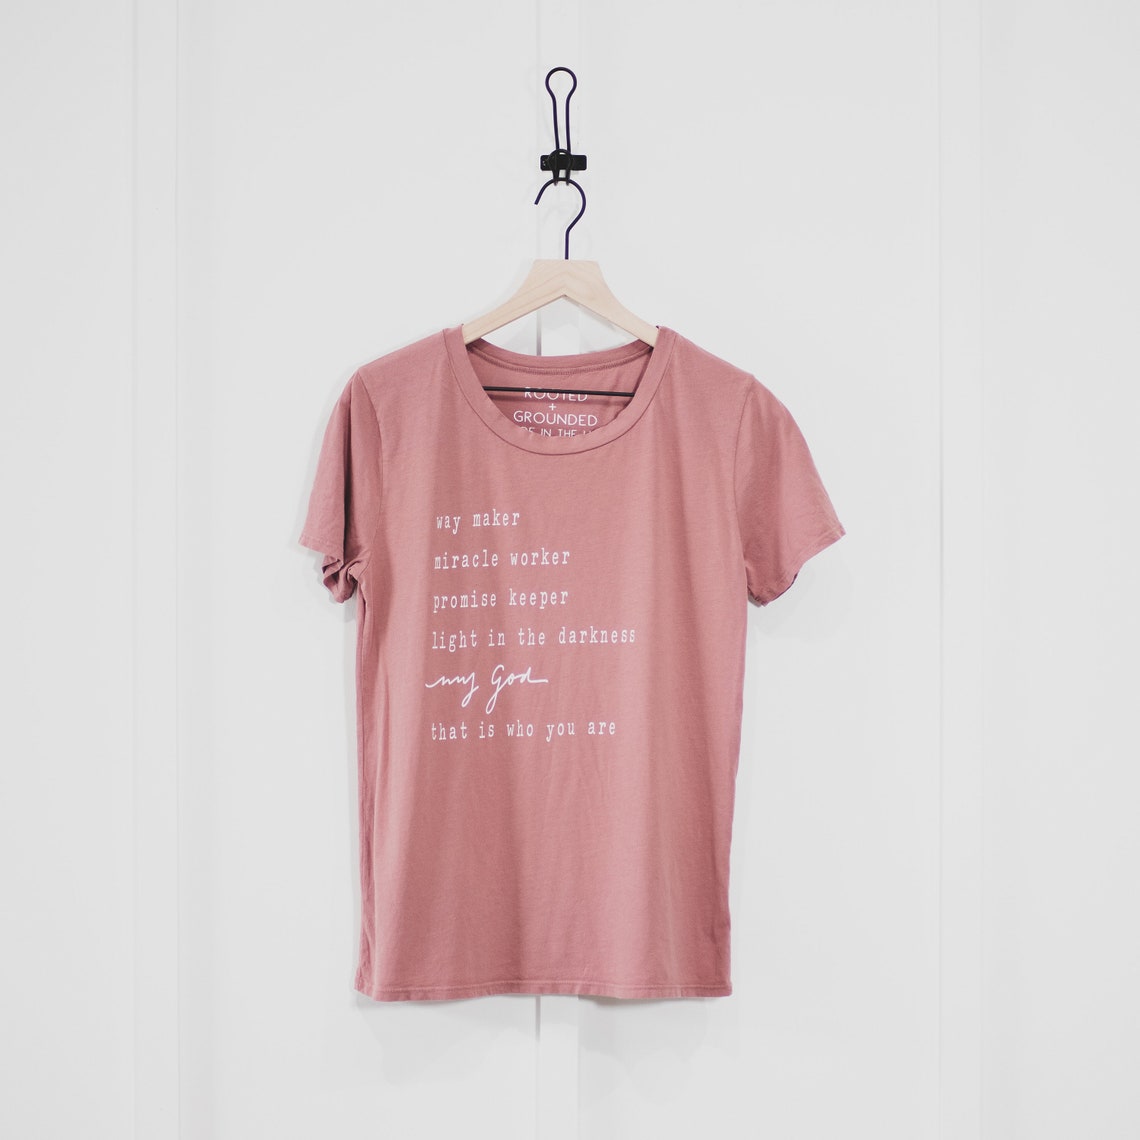 Waymaker Women's Shirt Women's T Shirt 100% | Etsy